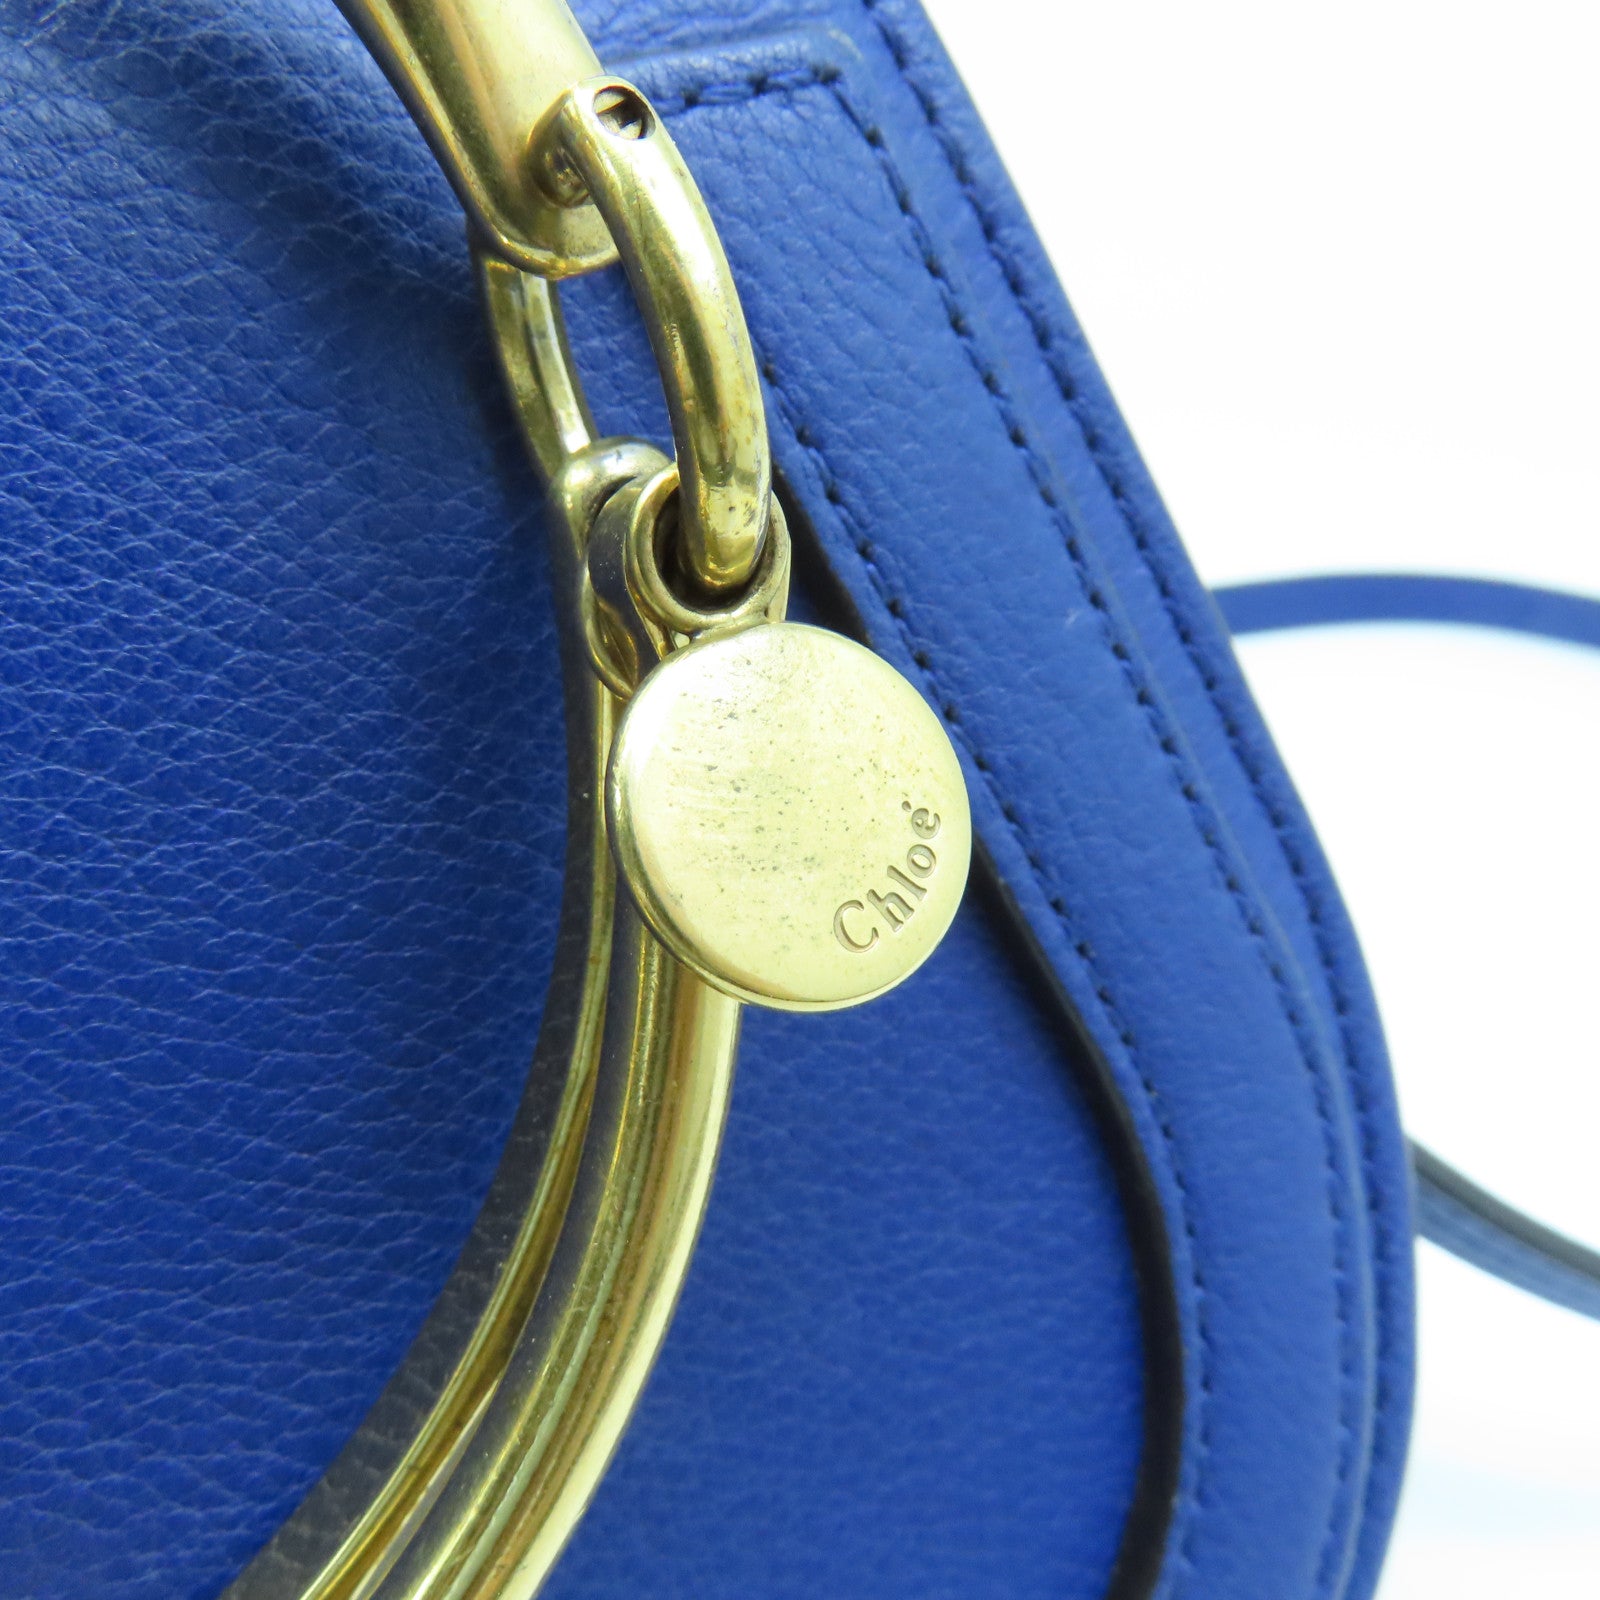 Chloe Leather Bracelet Nile Gold Buckle Shoulder Bag Blue